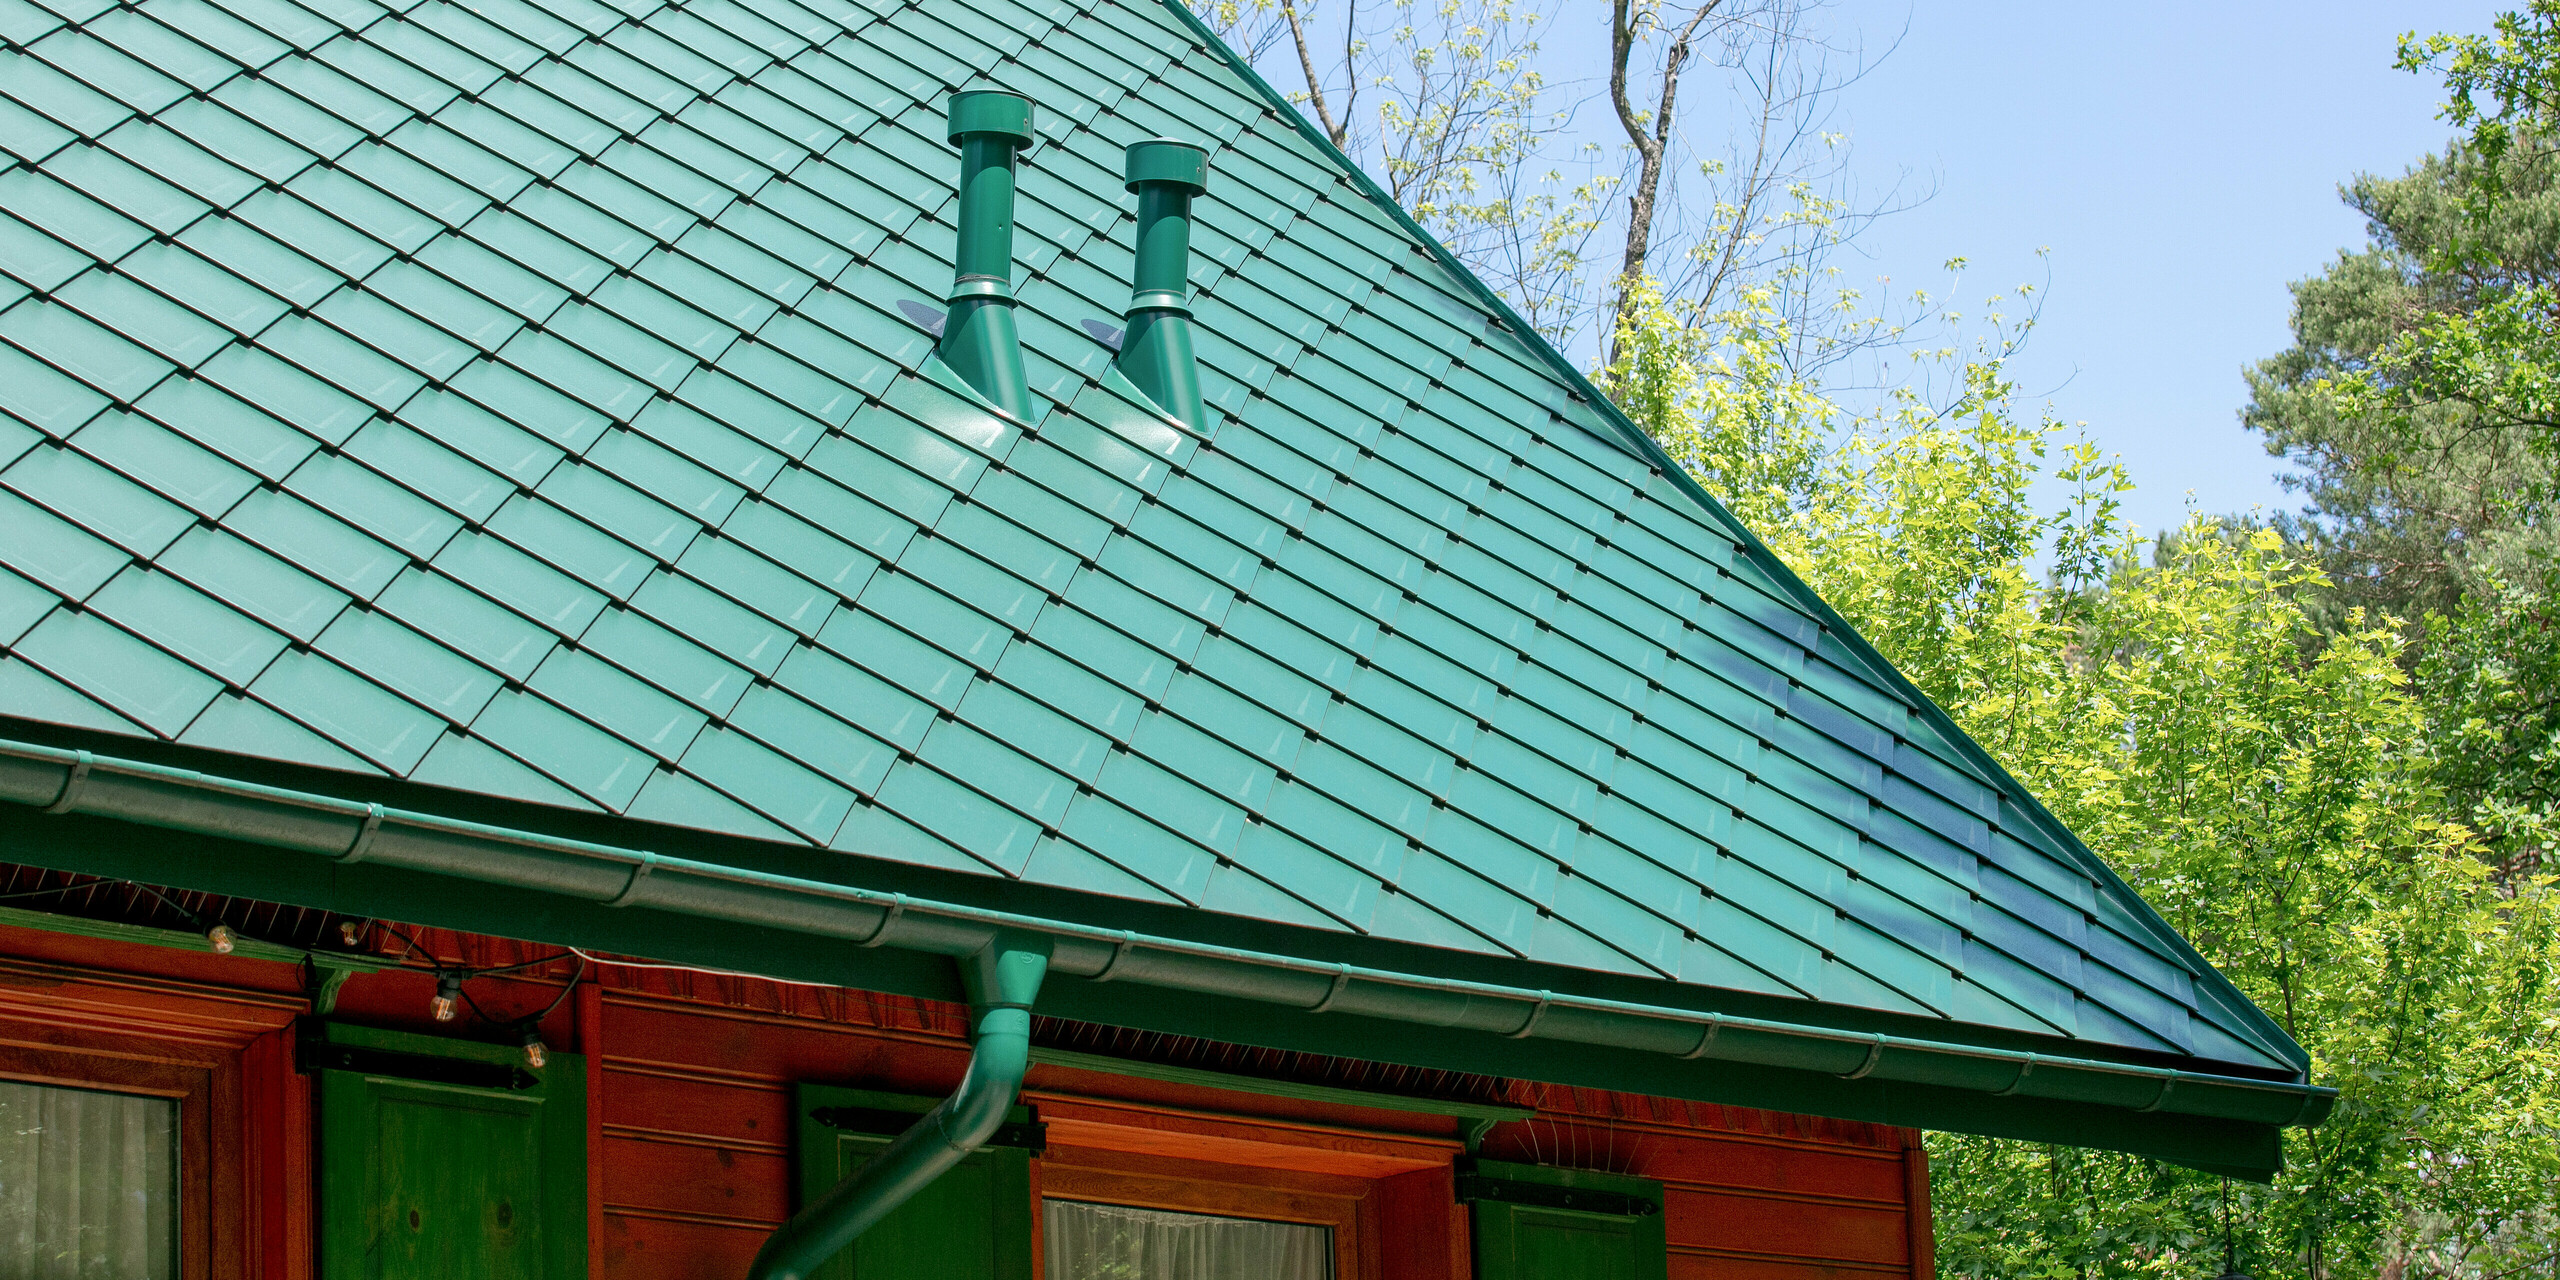 Cukiernia Sosenka avec un toit PREFA en losange 44×44 ainsi que tuyau de descente et gouttière suspendue en vert mousse